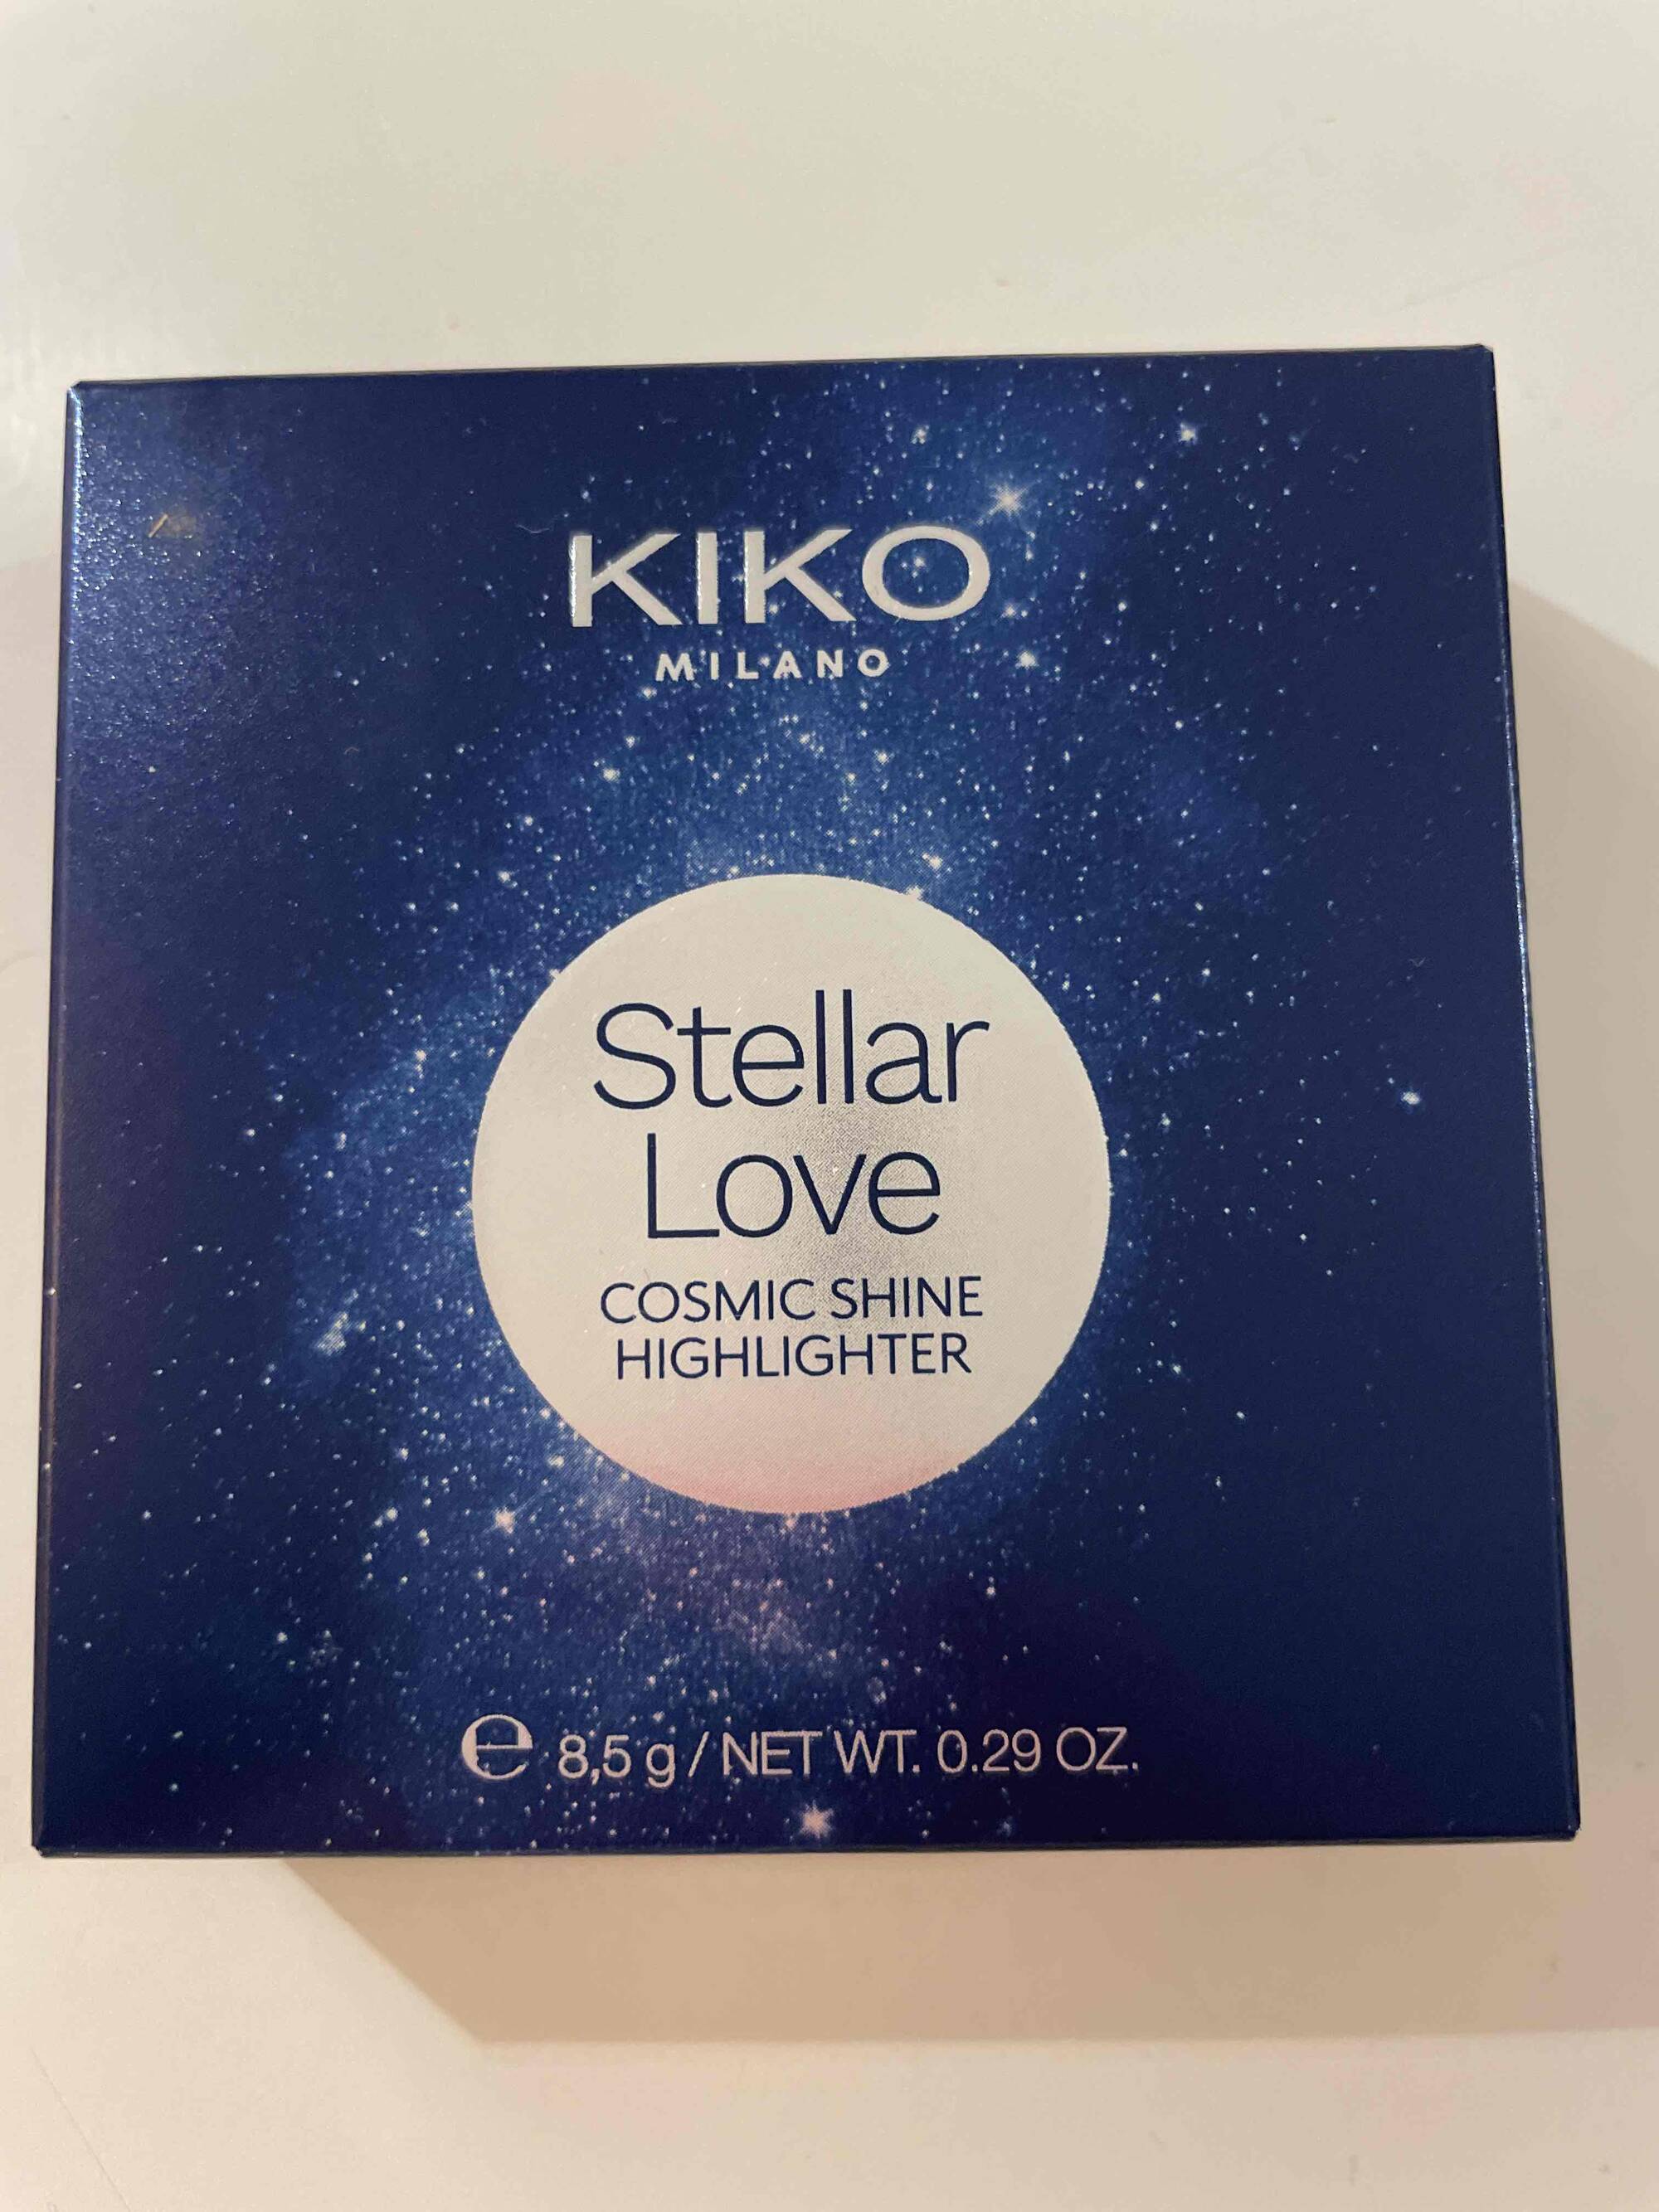 KIKO MILANO - Stellar love - Cosmic shine highlighter